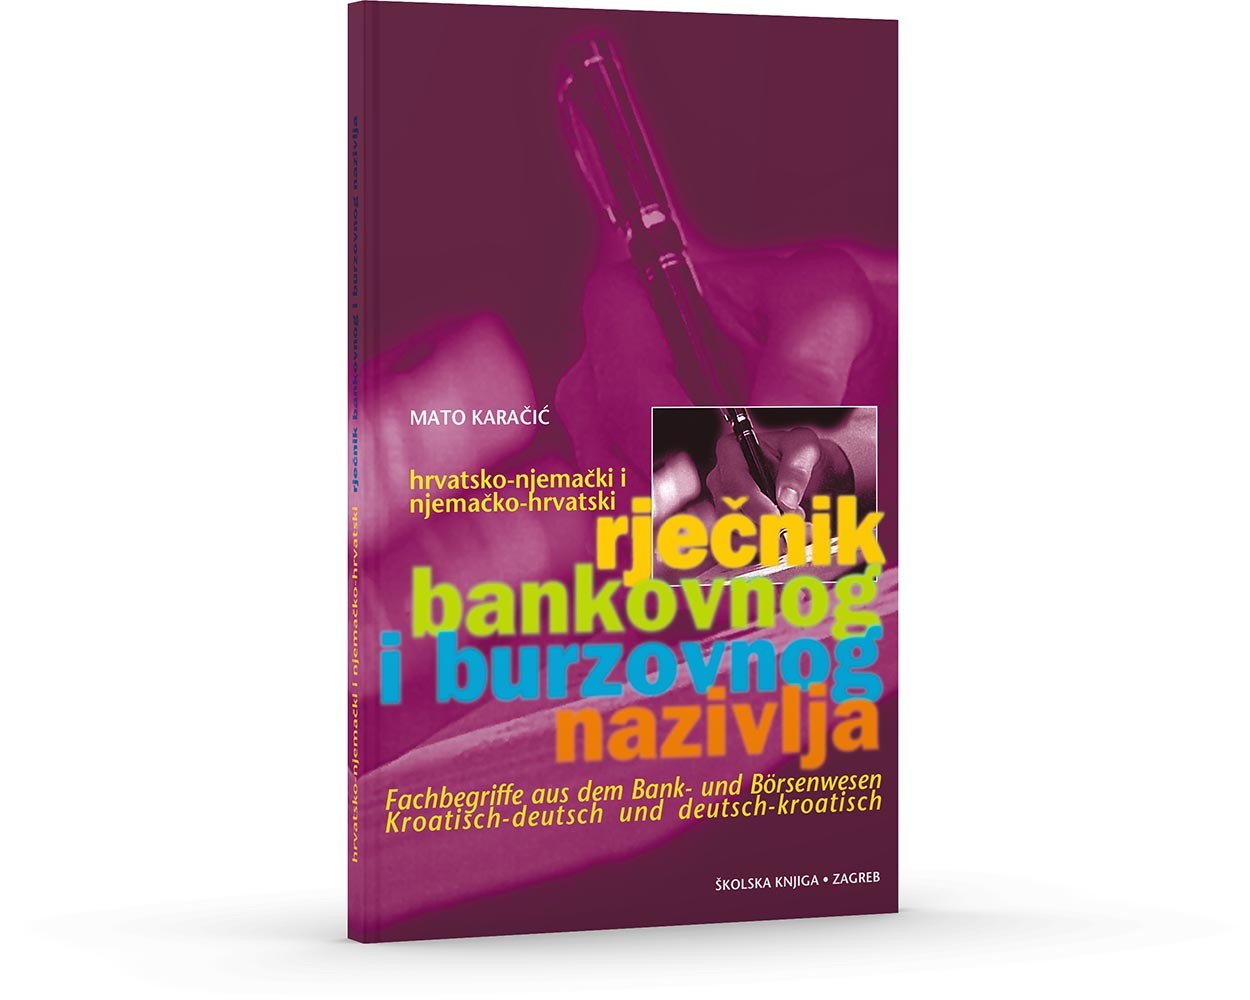 Hrvatsko-njemački i njemačko-hrvatski rječnik bankovnog i burzovnog nazivlja